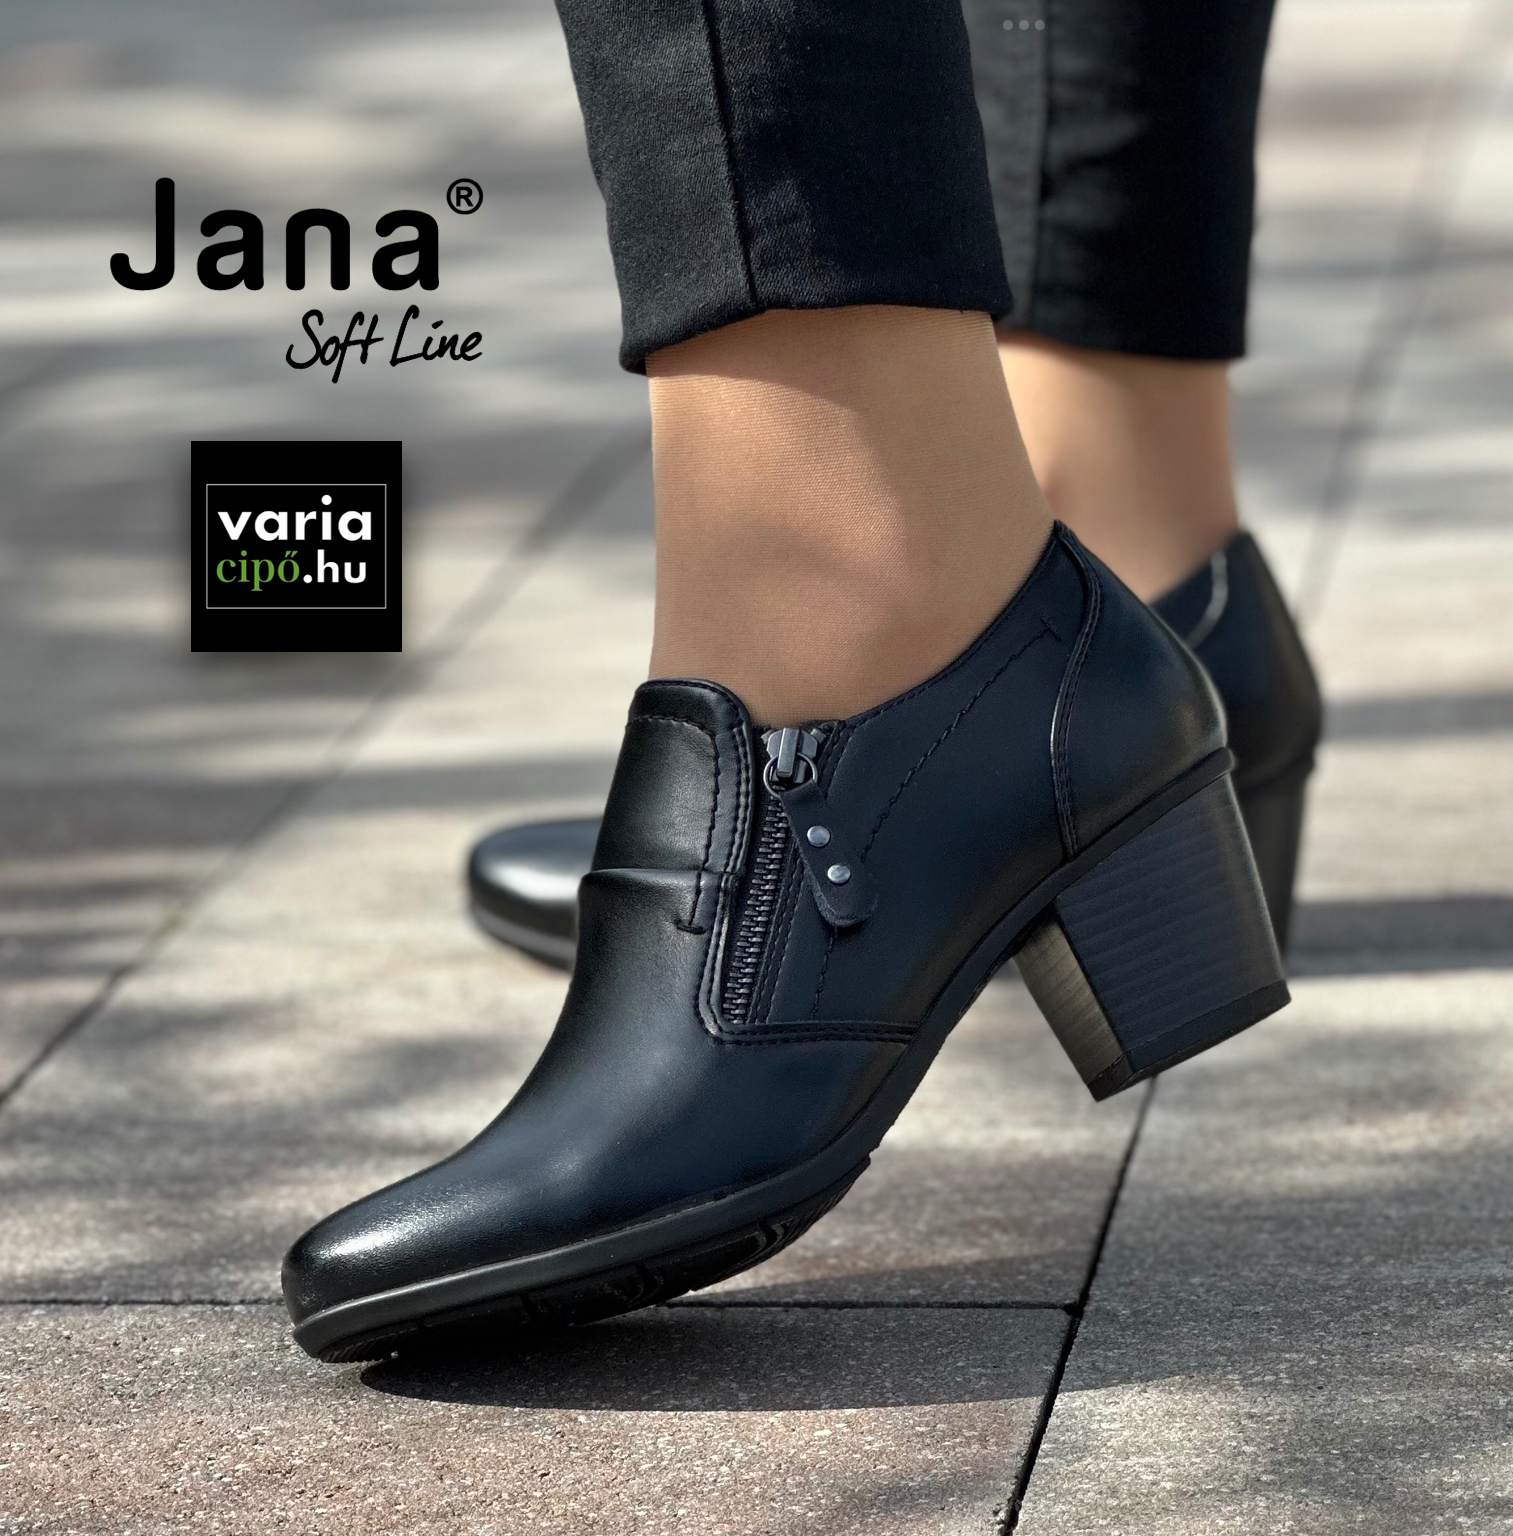 Jana klasszikus női félcipő, 8-24469-41 001 black